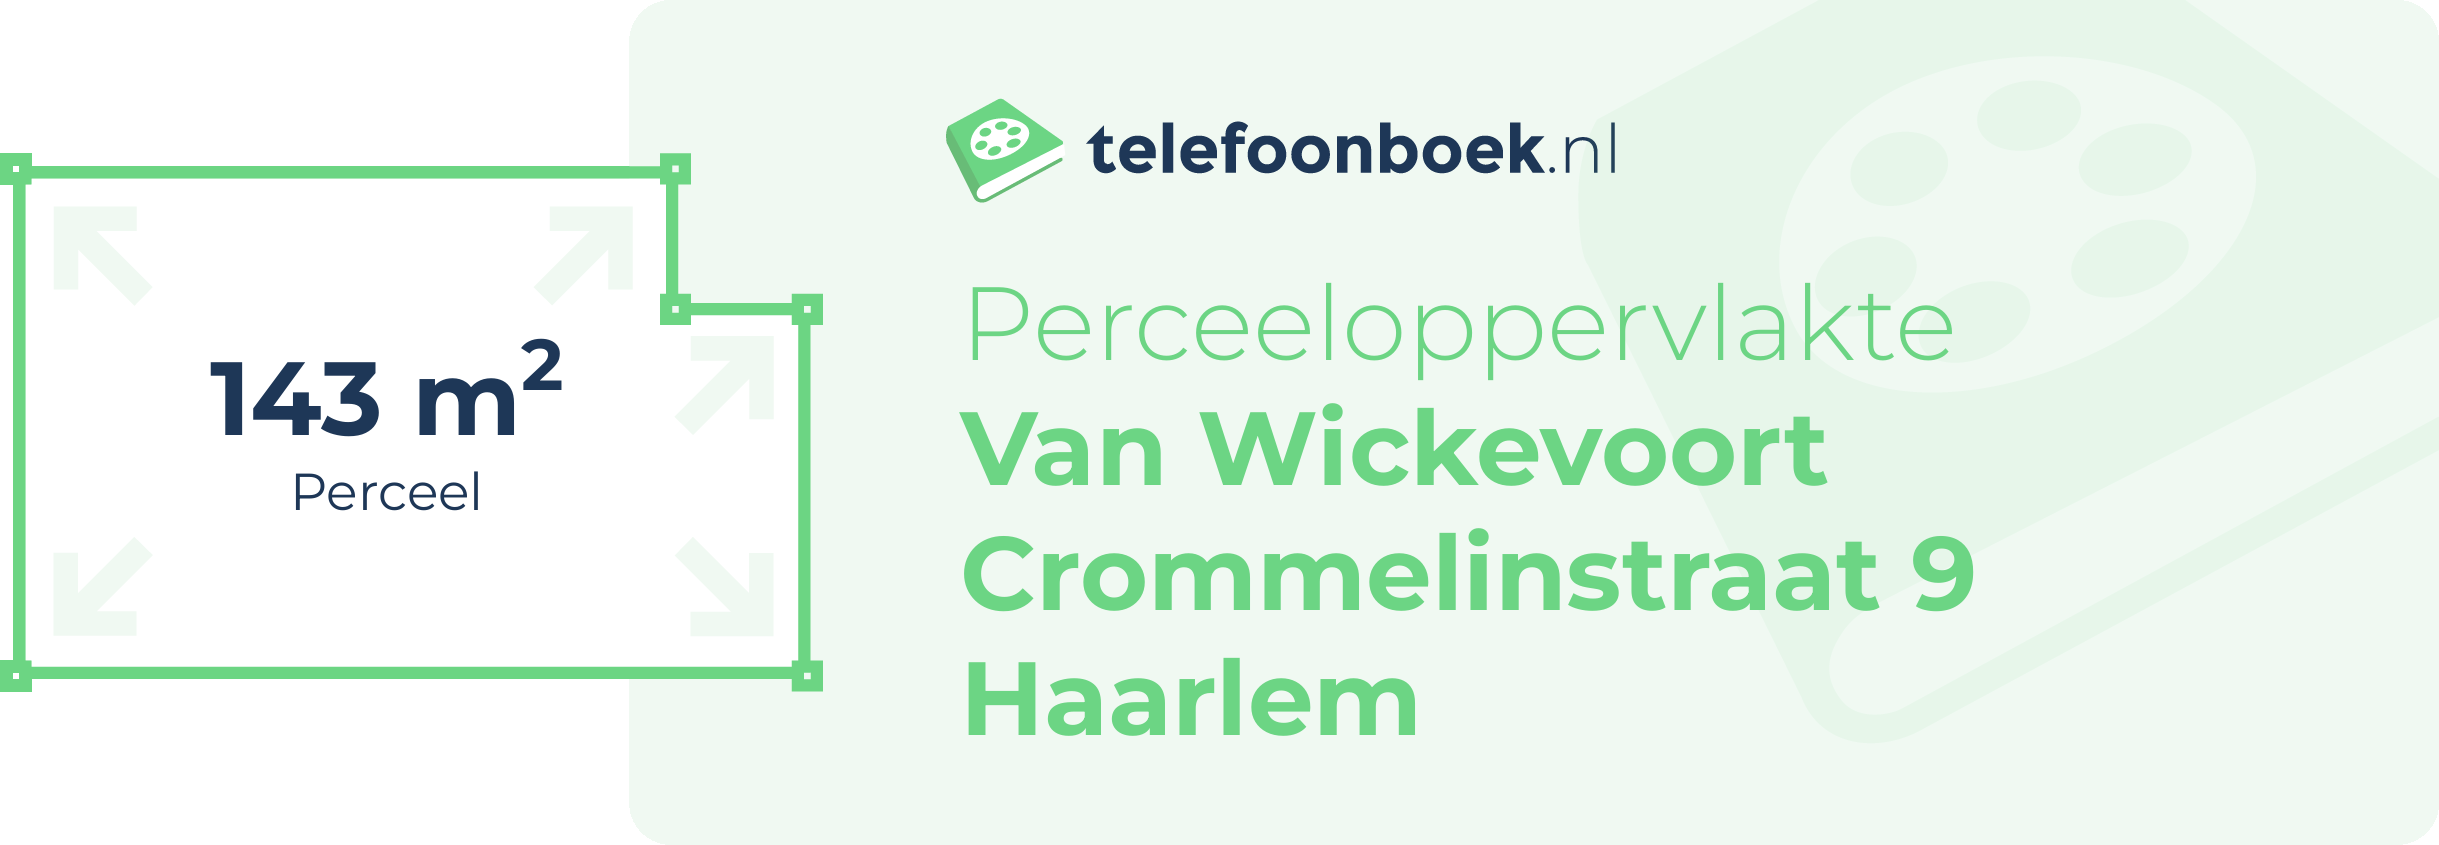 Perceeloppervlakte Van Wickevoort Crommelinstraat 9 Haarlem